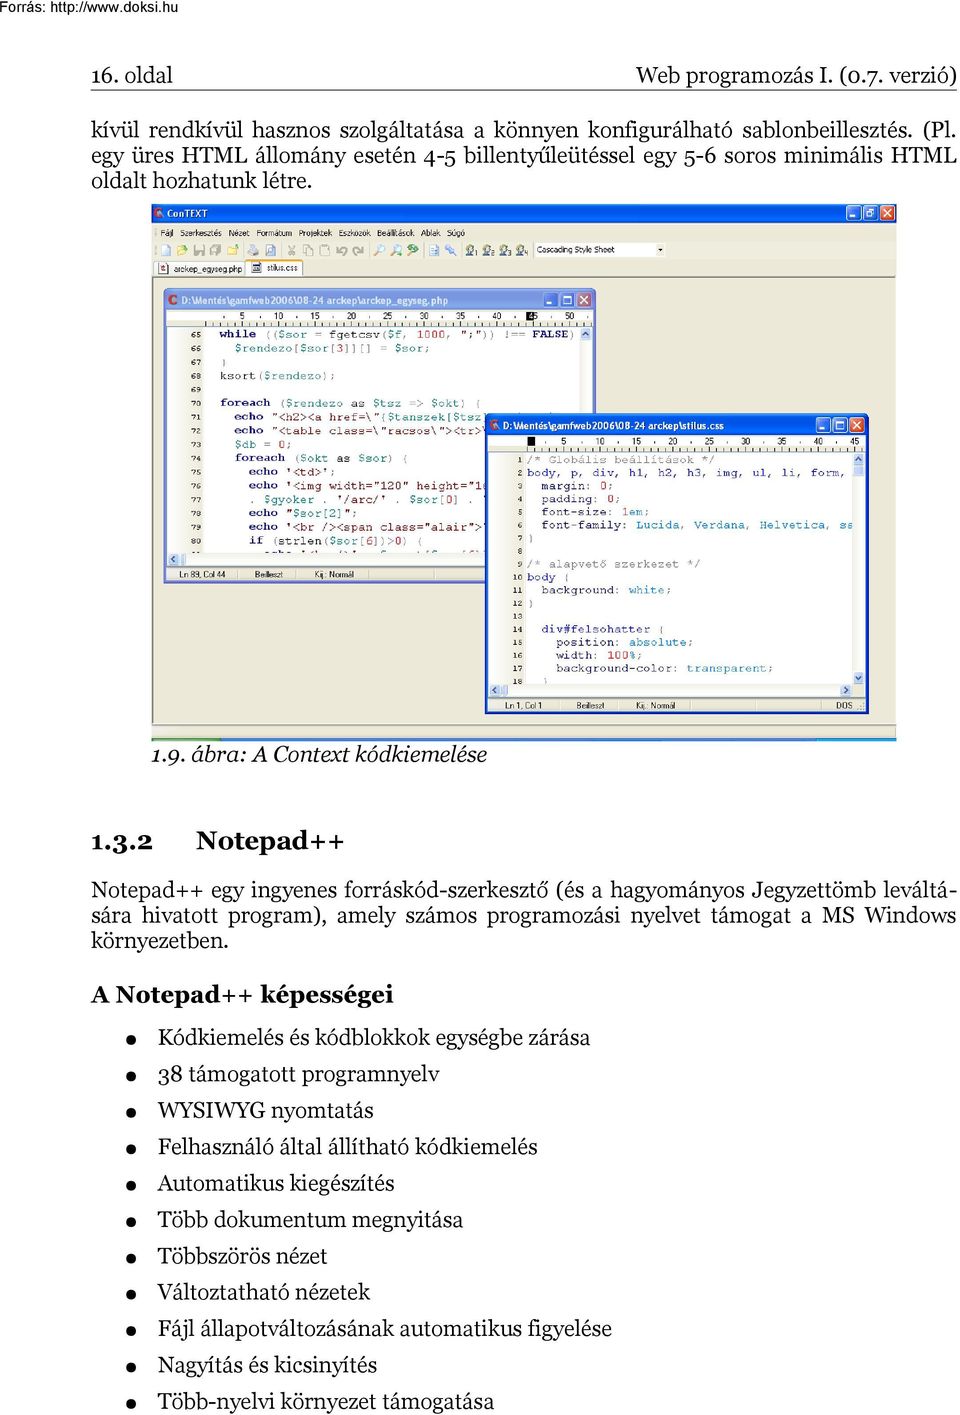 2 Notepad++ Notepad++ egy ingyenes forráskód-szerkesztő (és a hagyományos Jegyzettömb leváltására hivatott program), amely számos programozási nyelvet támogat a MS Windows környezetben.